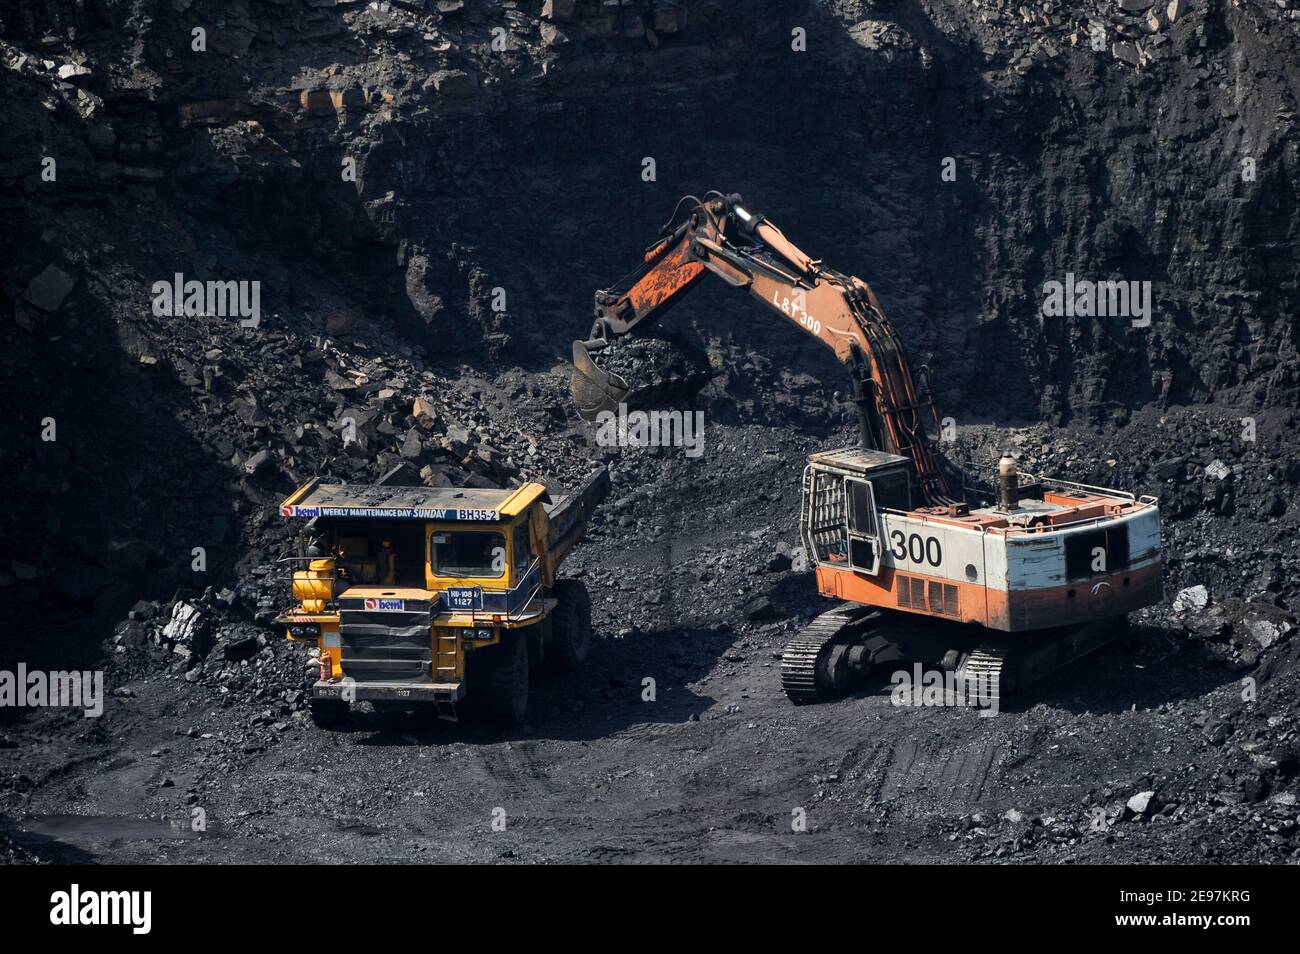 INDIA Dhanbad, estrazione di carbone a getto aperto di BCCL Ltd una società di CARBONE INDIA , L&T digger e grande dumper BEML / INDIEN Dhanbad , offener Kohle Tagebau von BCCL Ltd. Ein Tochterunternehmen von Coal India Foto Stock